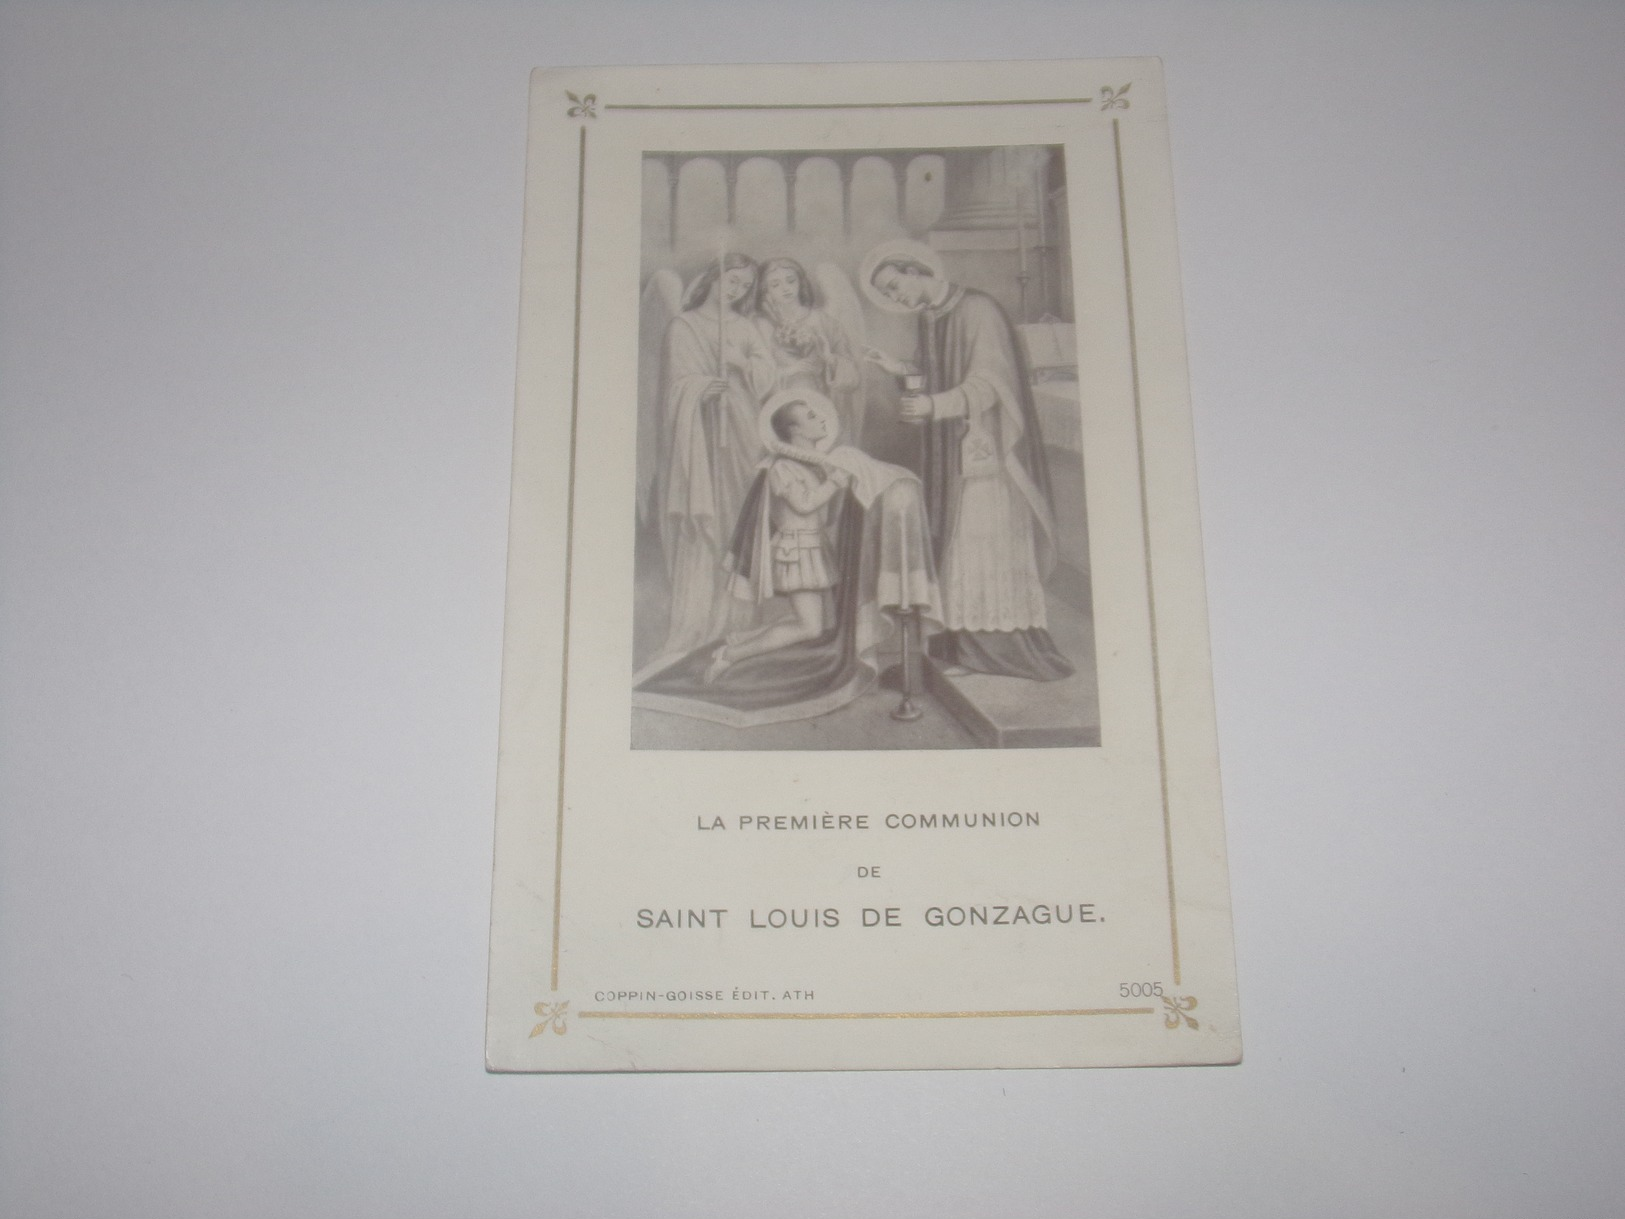 Images Religieuses.Communion De Saint Louis De Gonzague.Edition Coppin Goisse à Ath. - Religion & Esotérisme